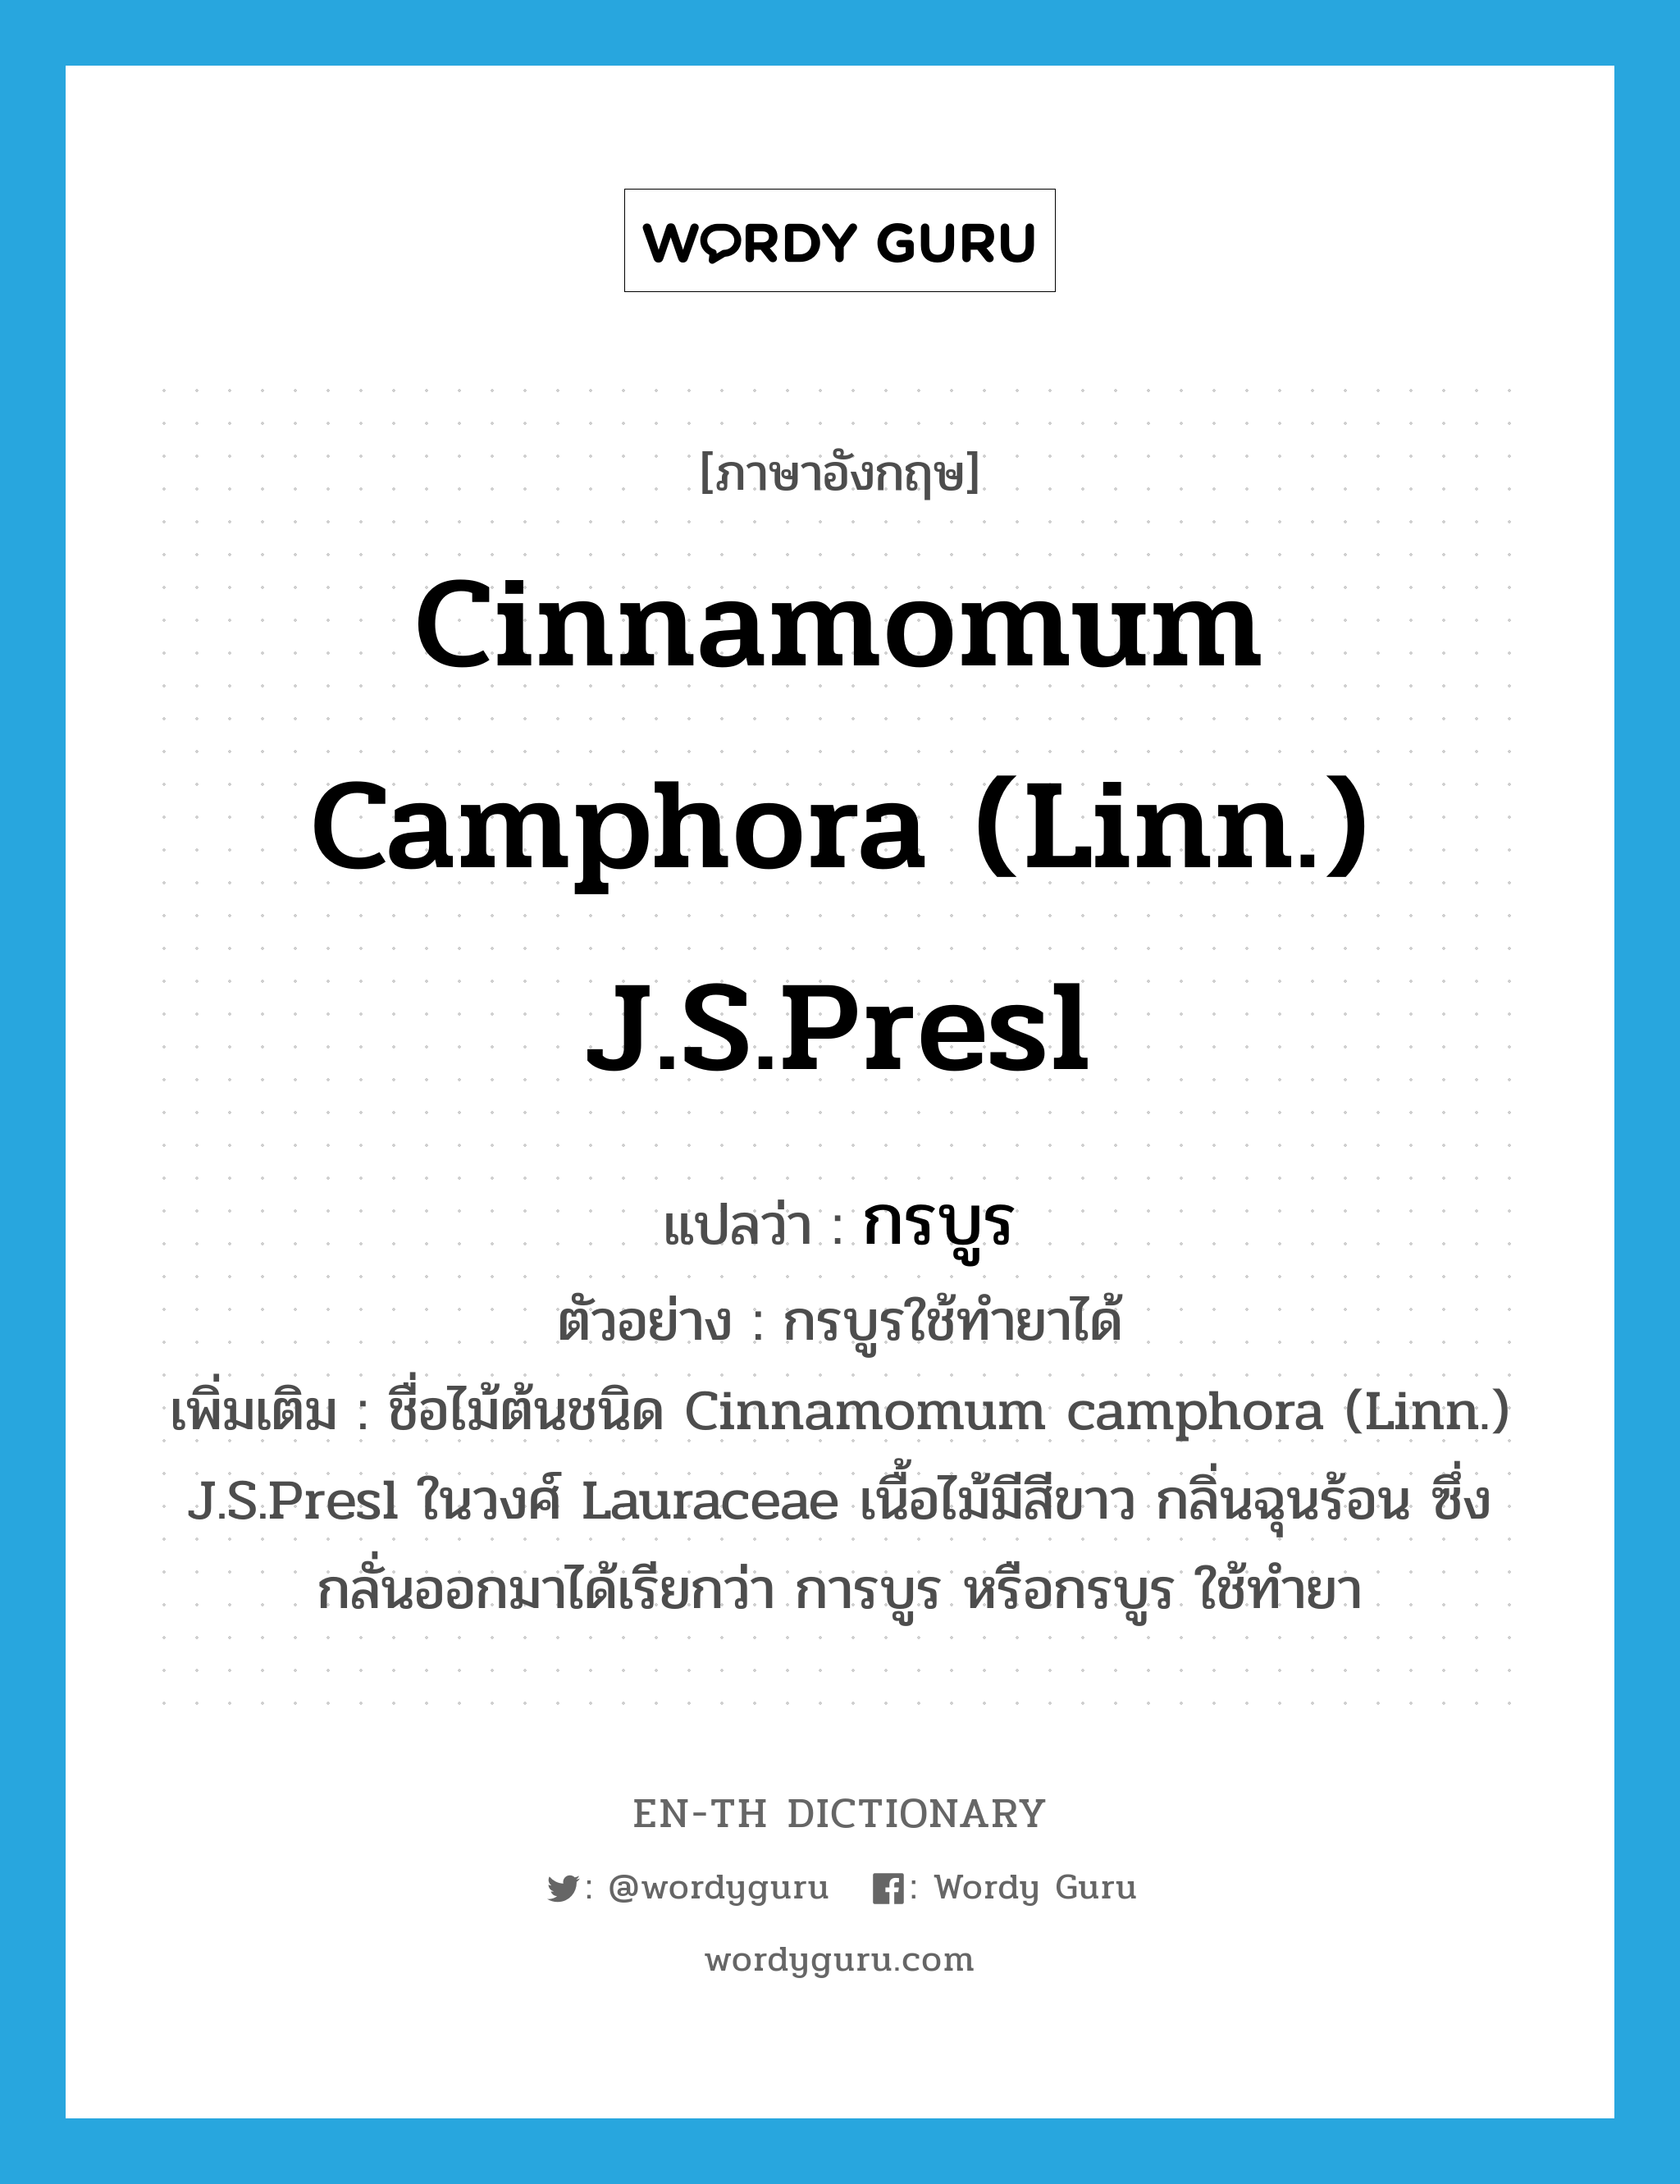 กรบูร ภาษาอังกฤษ?, คำศัพท์ภาษาอังกฤษ กรบูร แปลว่า Cinnamomum camphora (Linn.) J.S.Presl ประเภท N ตัวอย่าง กรบูรใช้ทำยาได้ เพิ่มเติม ชื่อไม้ต้นชนิด Cinnamomum camphora (Linn.) J.S.Presl ในวงศ์ Lauraceae เนื้อไม้มีสีขาว กลิ่นฉุนร้อน ซึ่งกลั่นออกมาได้เรียกว่า การบูร หรือกรบูร ใช้ทำยา หมวด N